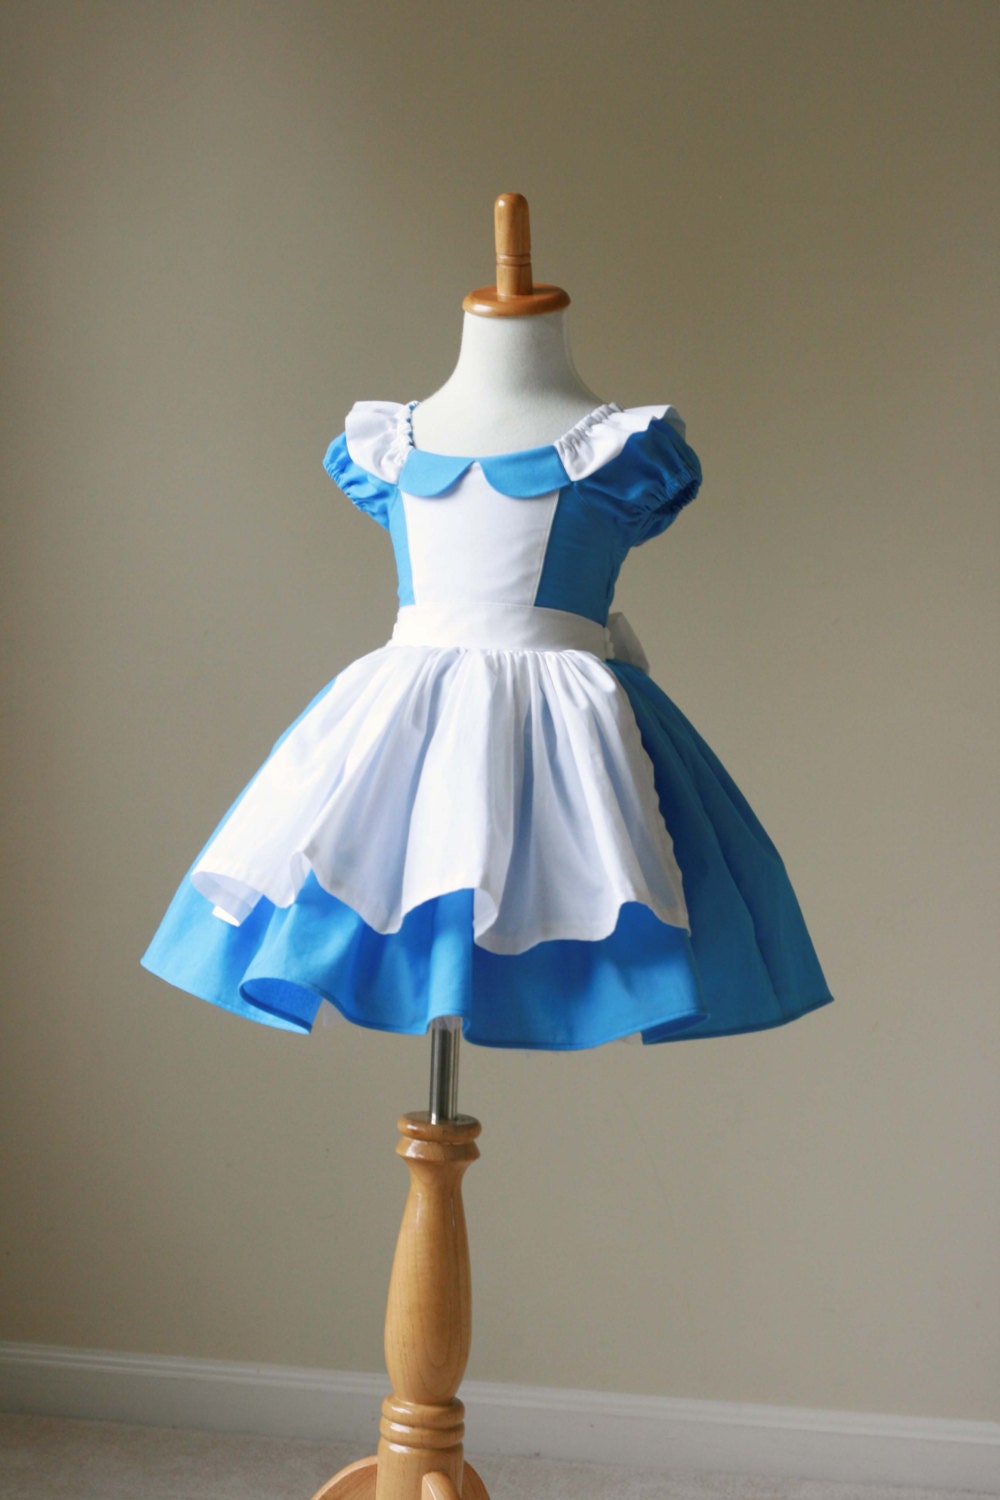 Alice in Wonderland Inspired Cotton Dress by 5littlemonkeysdesign